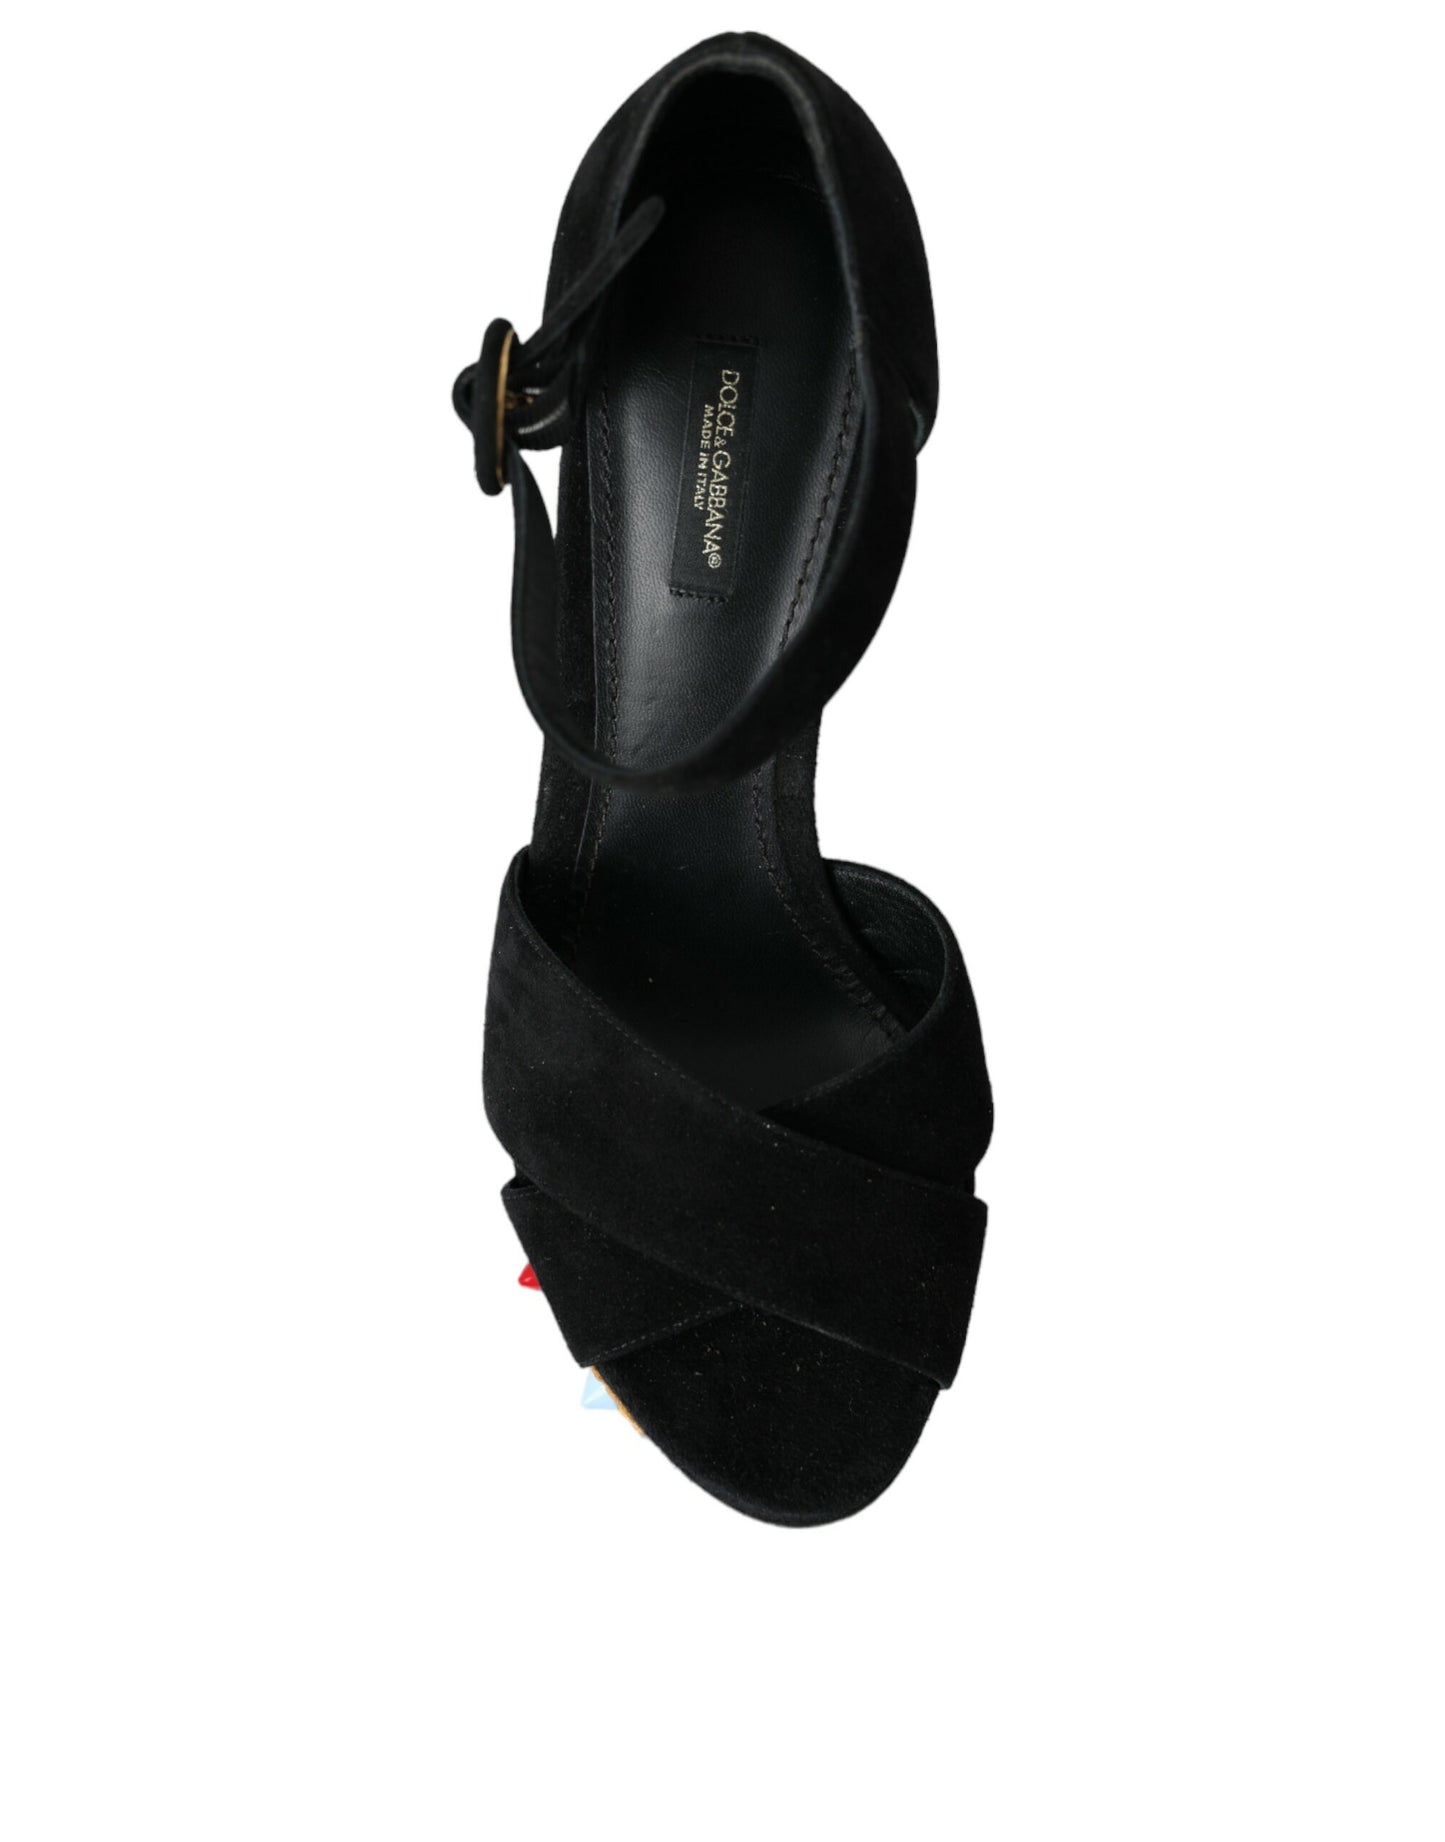 Dolce & Gabbana Black Floral Ankle Strap Heels Sandals Shoes